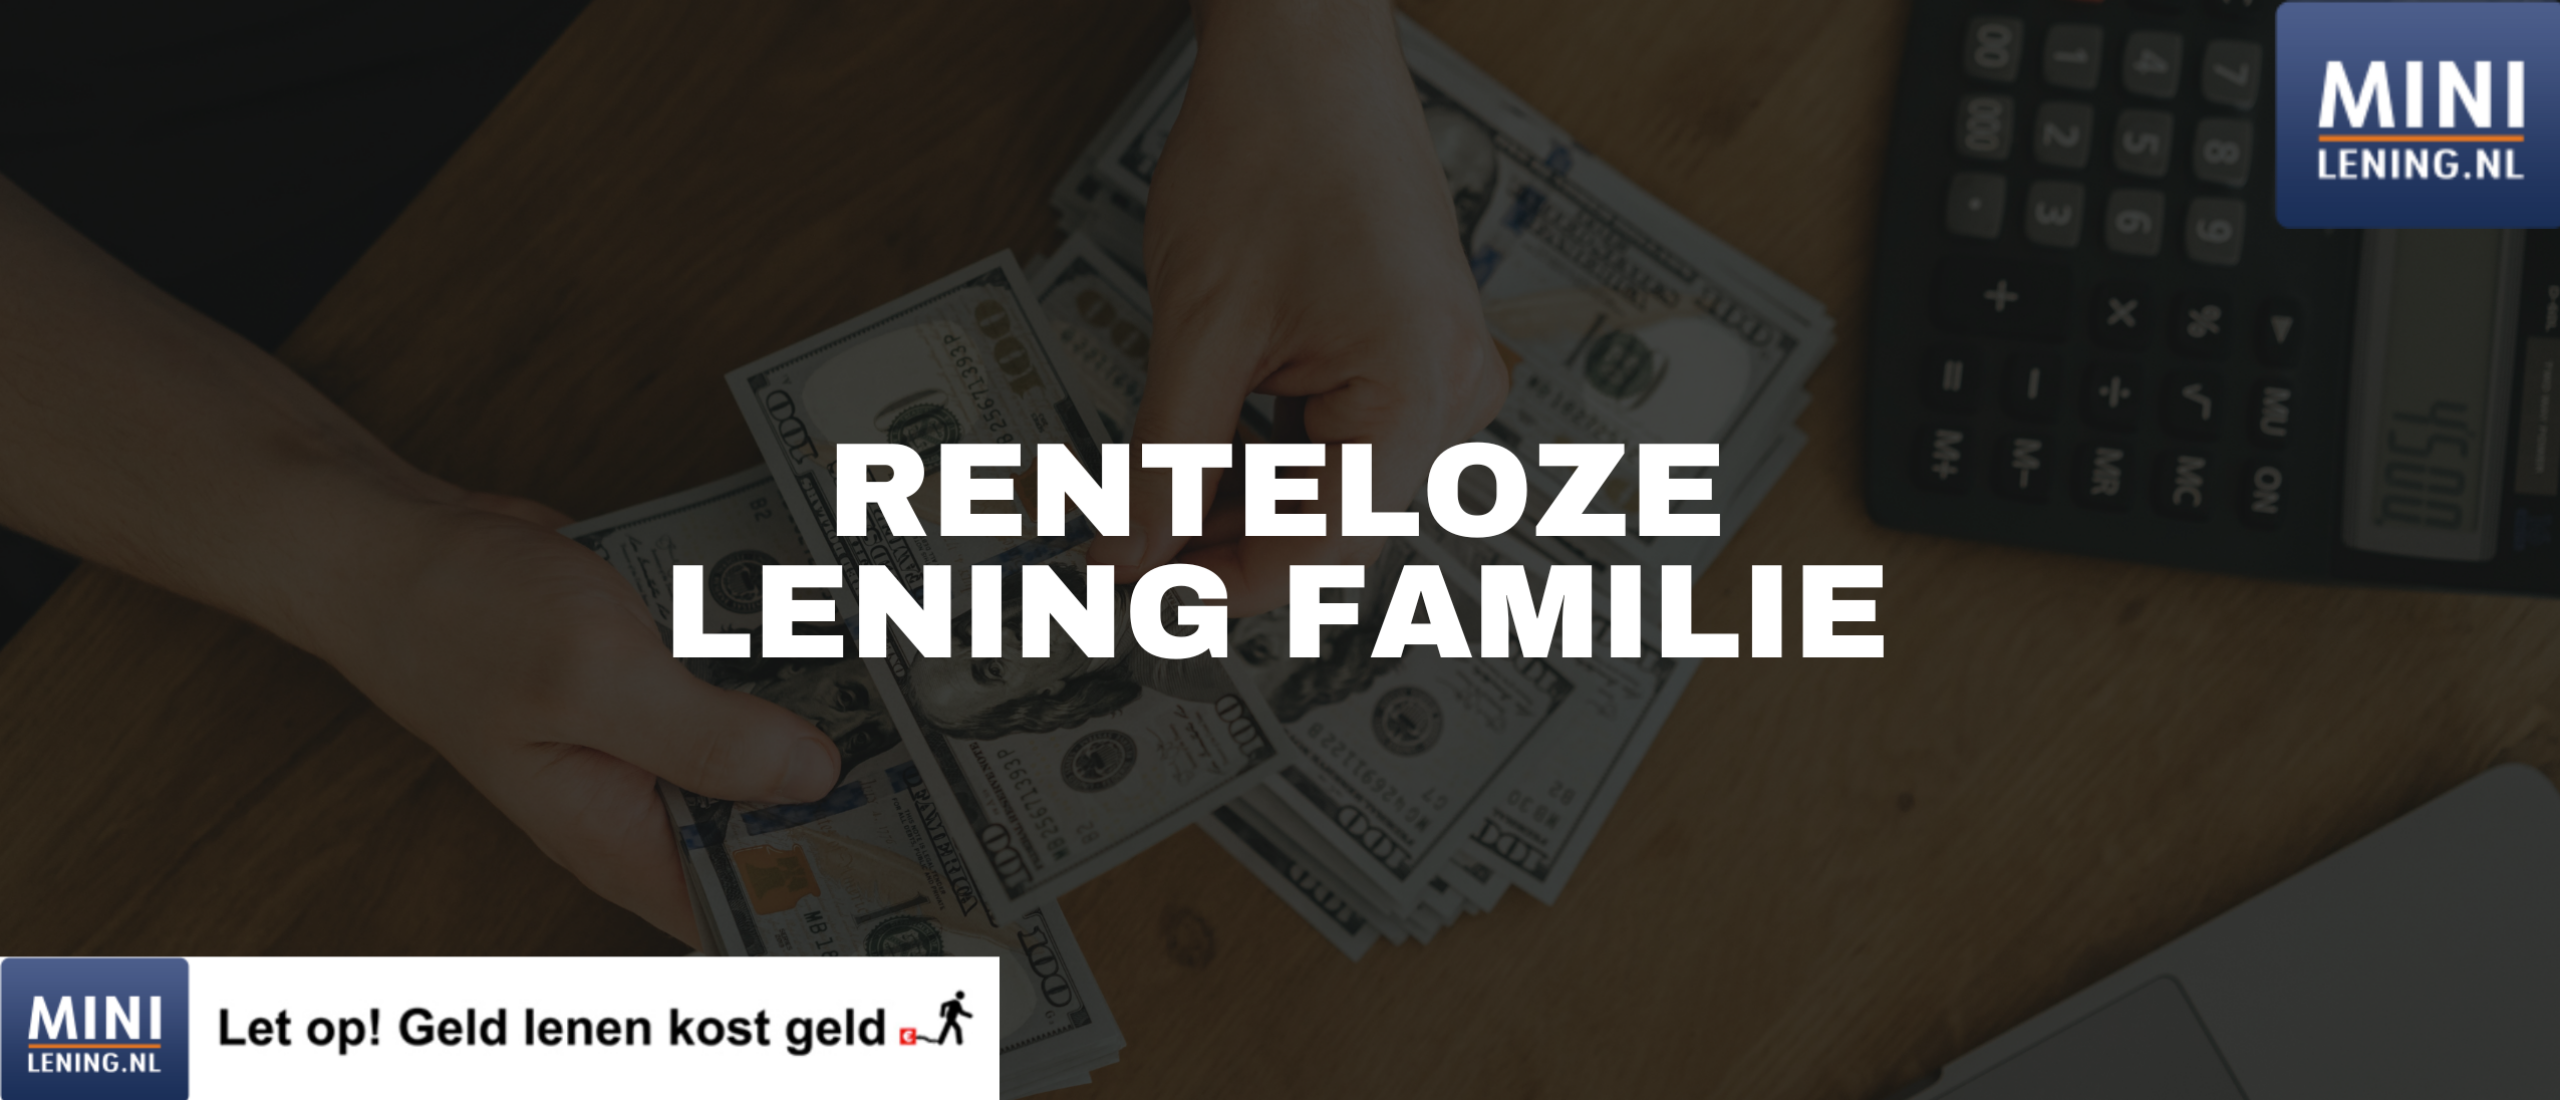 Renteloze lening familie: Geld lenen van familie